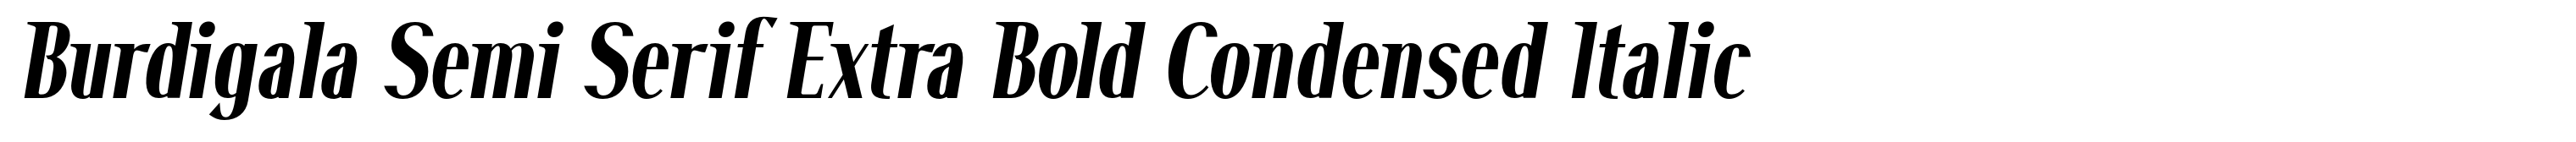 Burdigala Semi Serif Extra Bold Condensed Italic